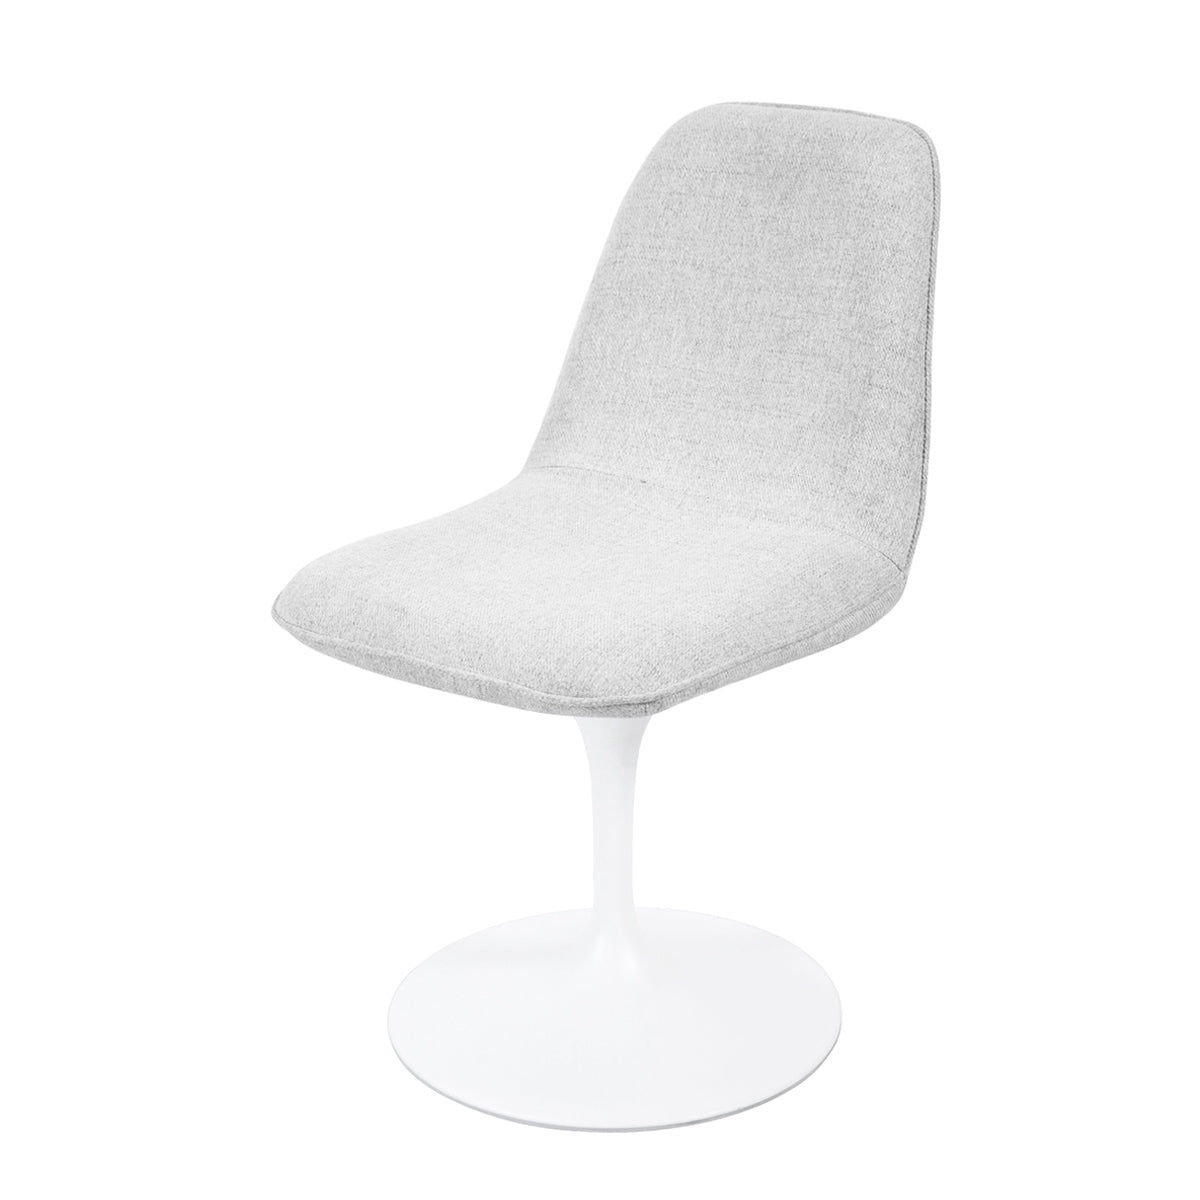 Chaise pivotante avec assise et dossier rembourrés recouverts de tissu blanc gris clair, base ronde en métal avec revêtement en epoxy blanc - LORA